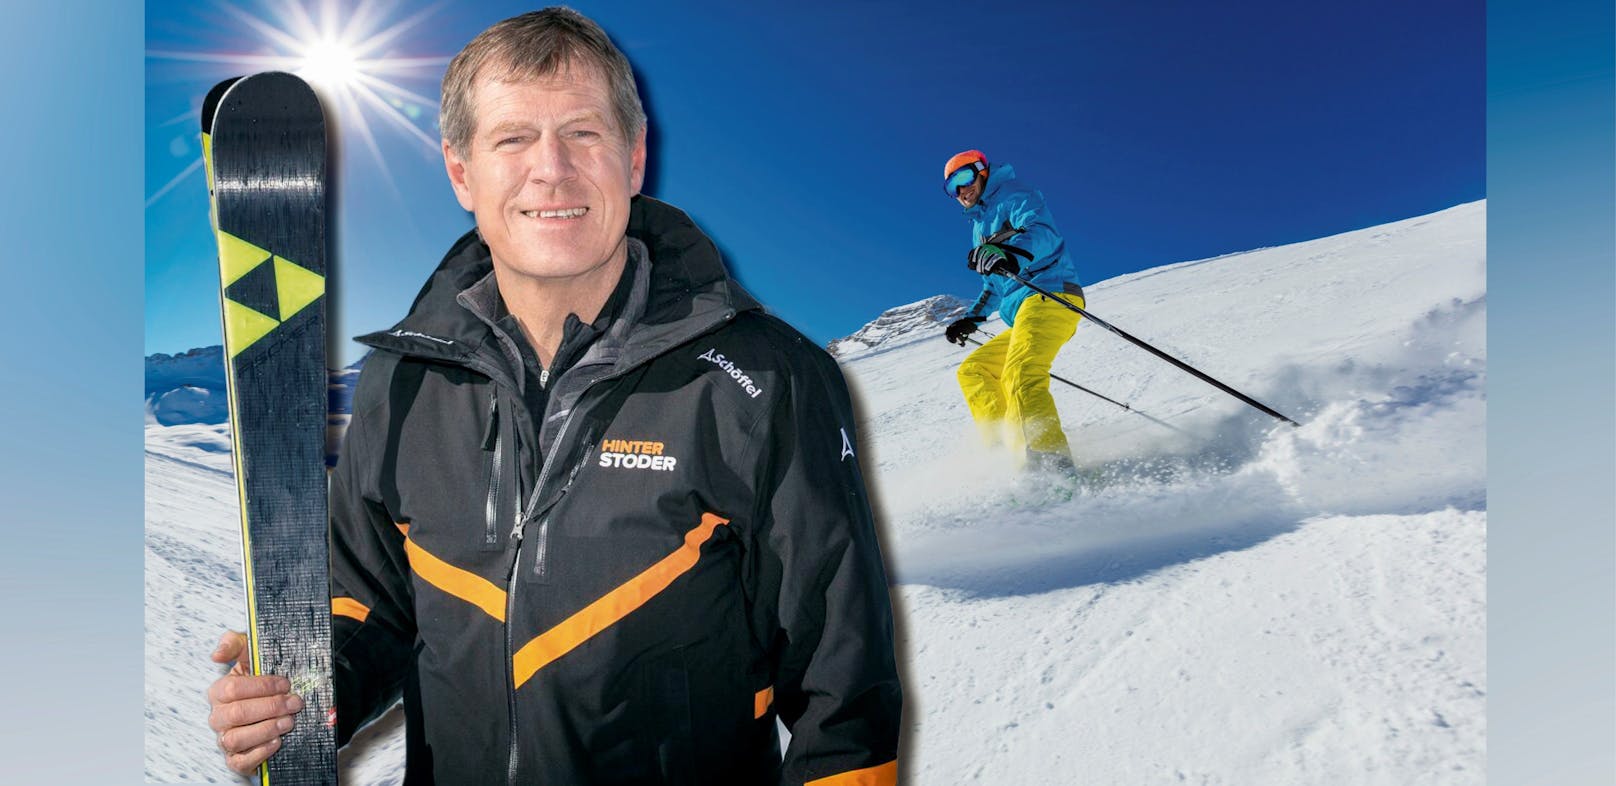 Skifahren umweltschädlich? Seilbahn-Chef platzt Kragen